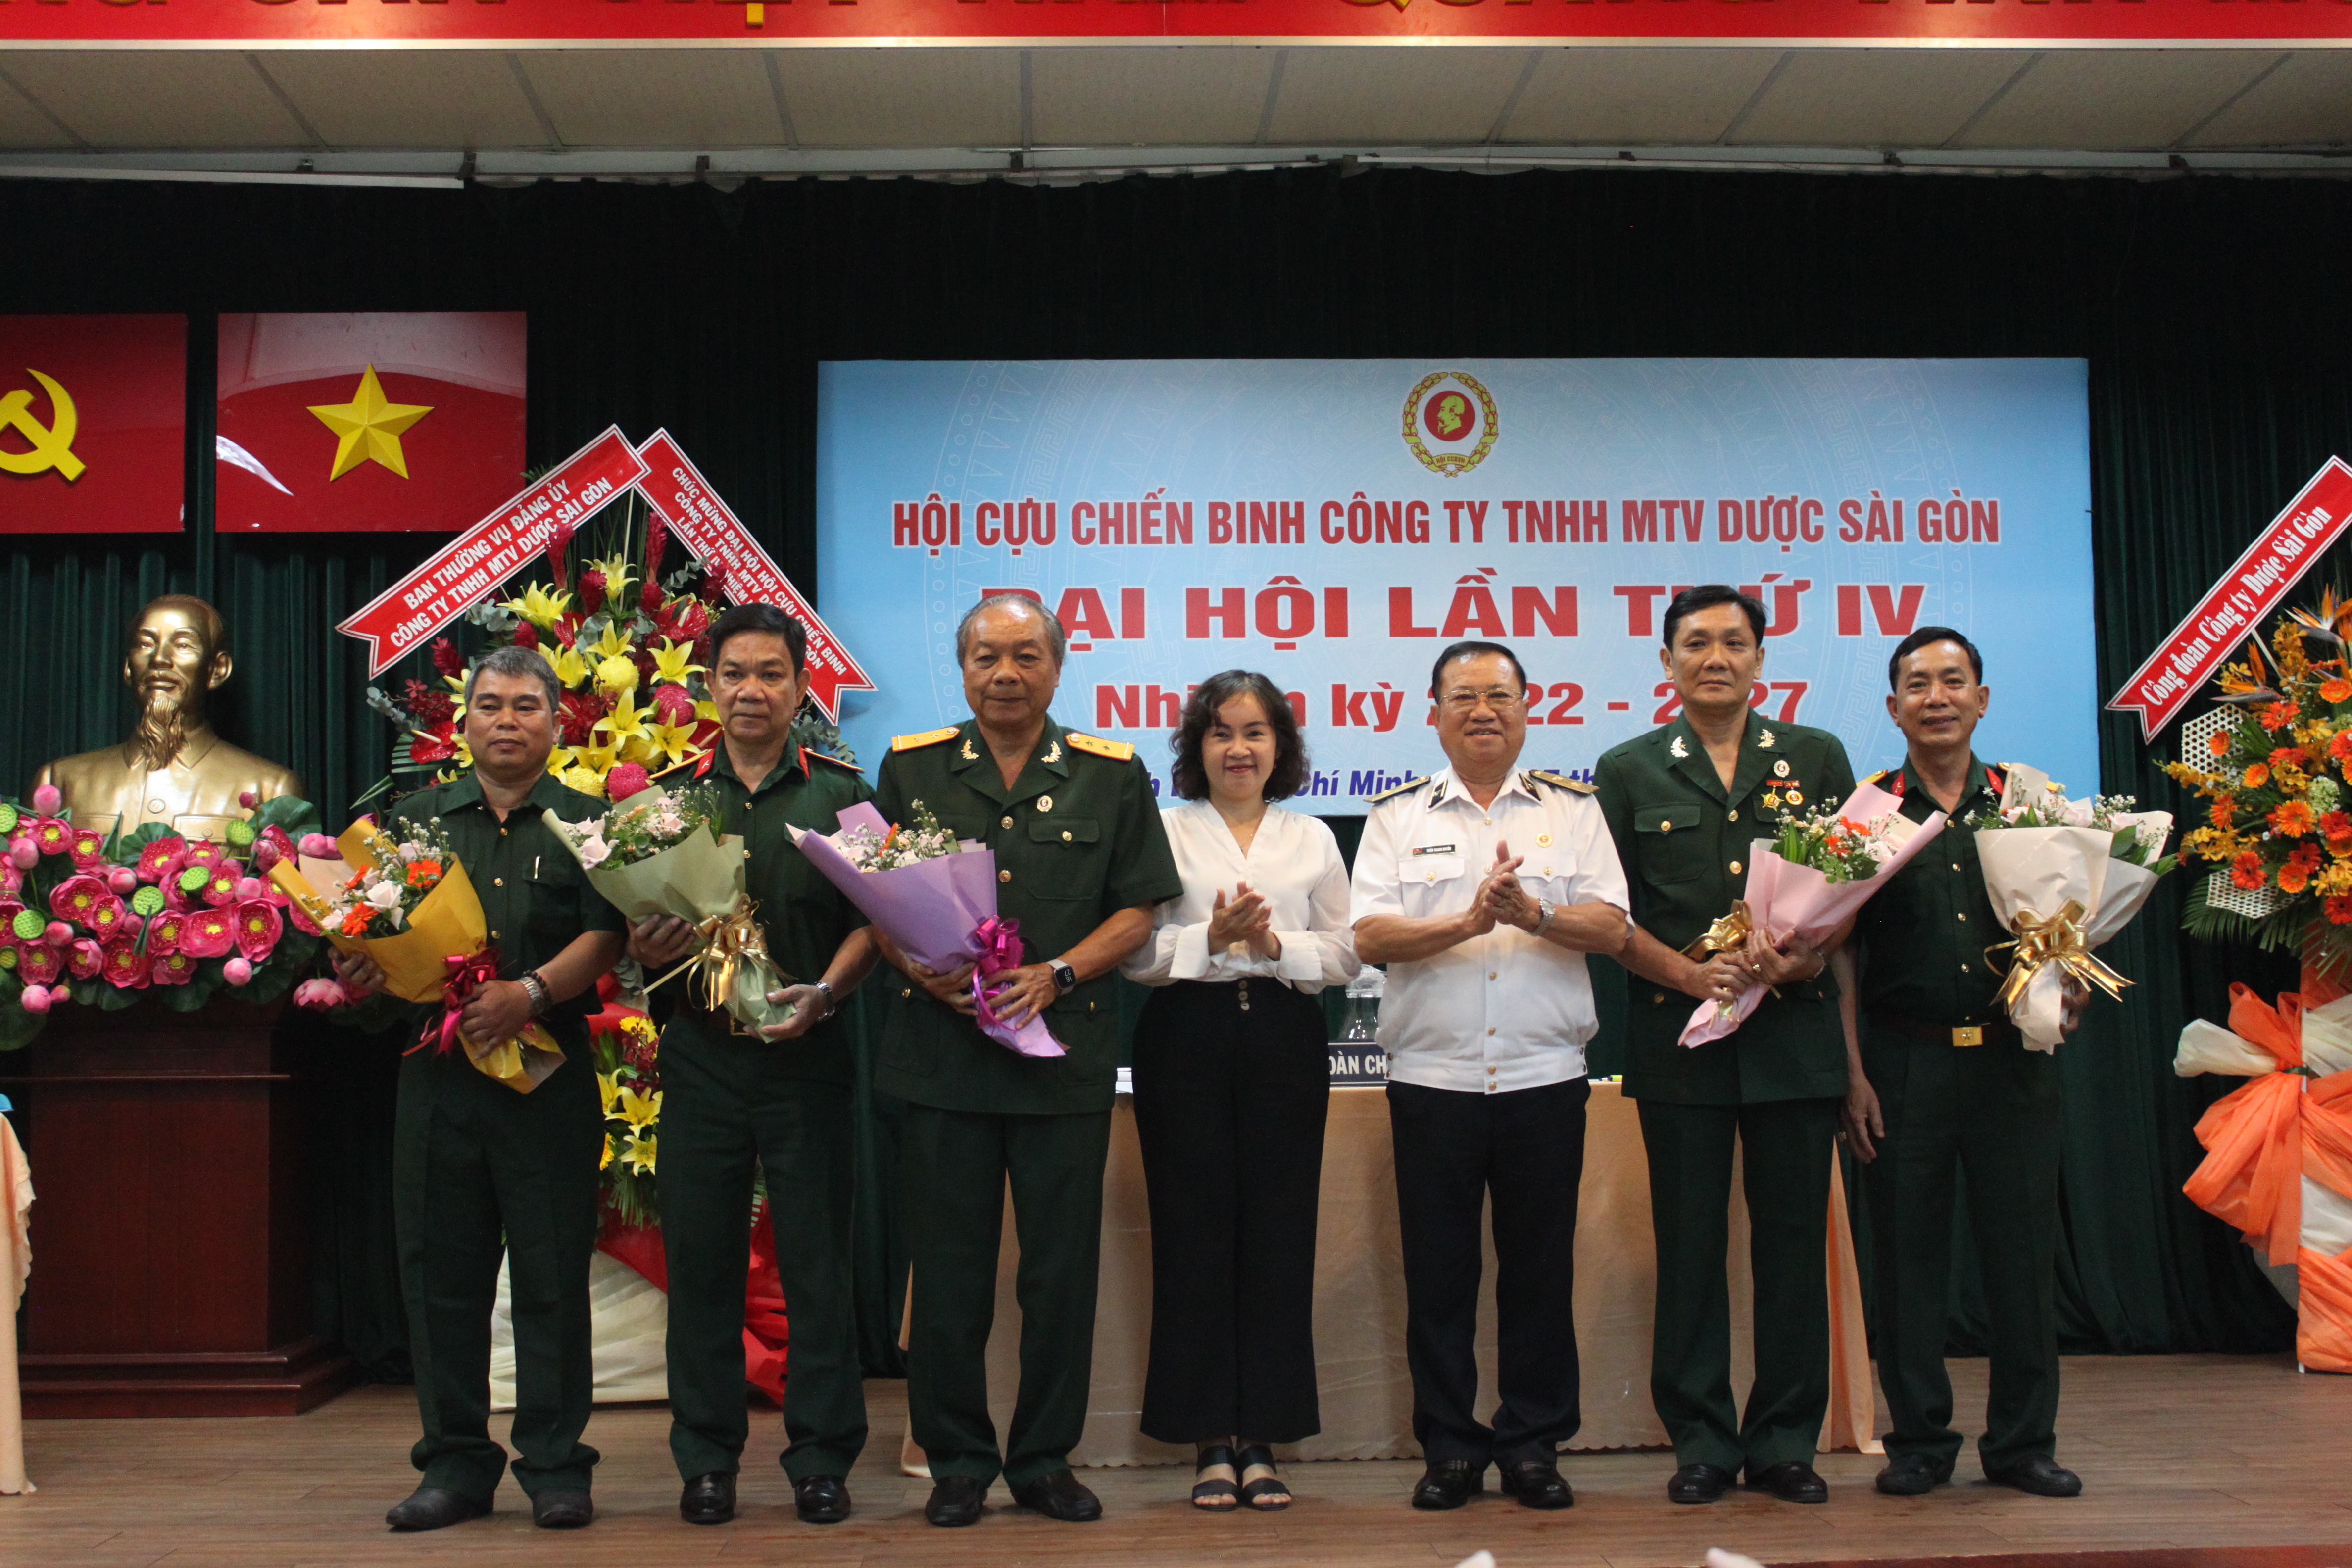 Đại hội Hội cựu chiến binh Công ty TNHH MTV Dược Sài Gòn - Sapharco lần thứ IV nhiệm kỳ 2022 - 2027